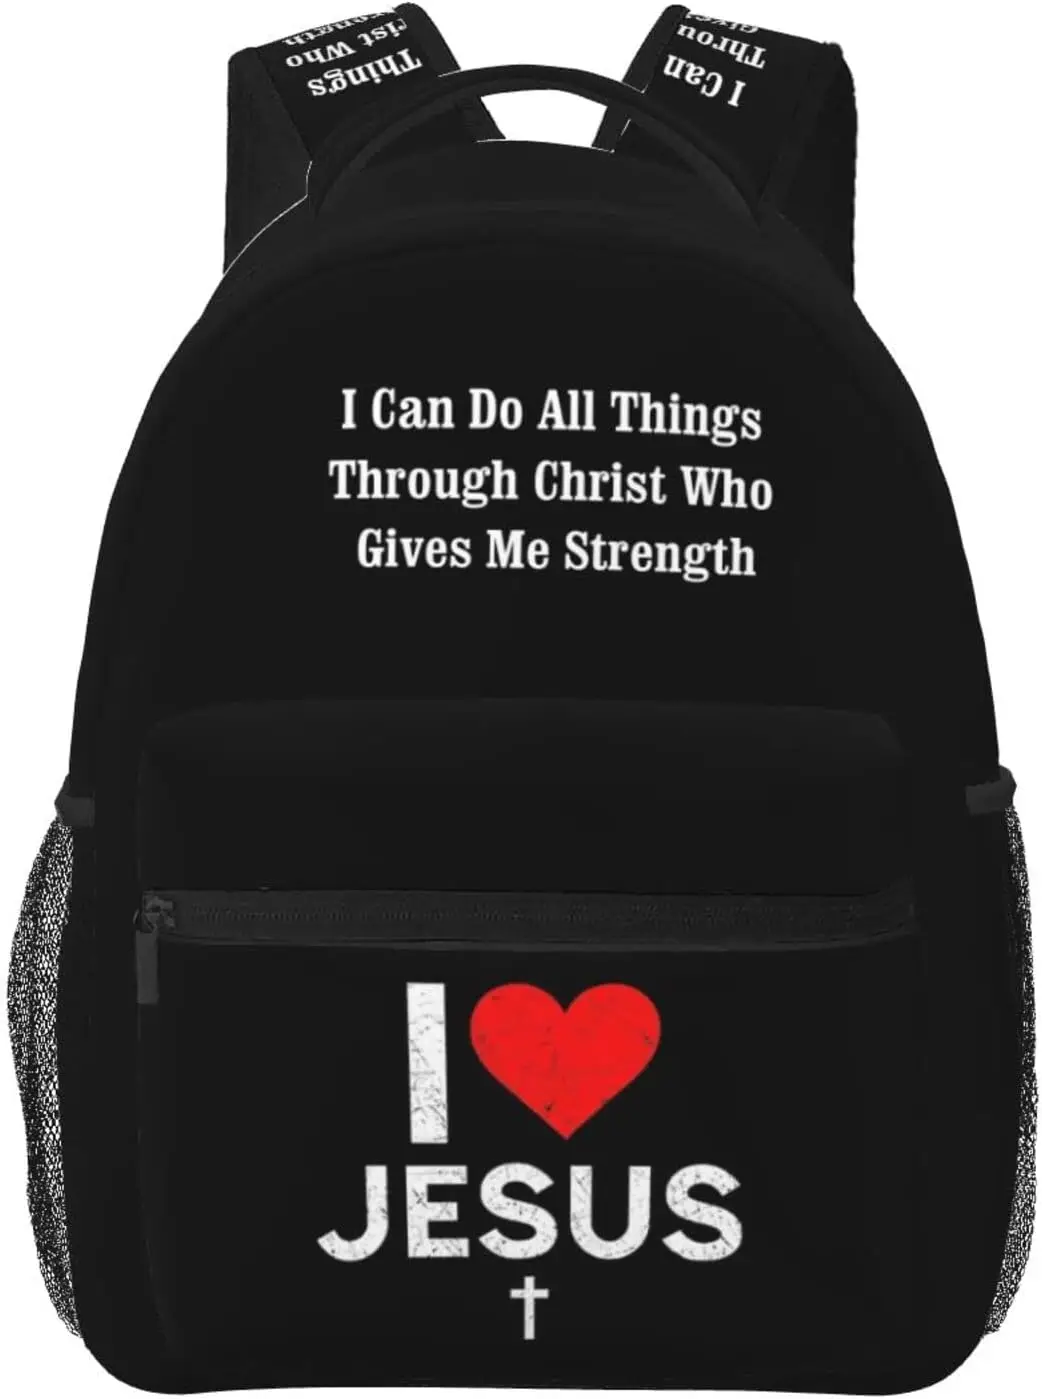 

I Love Jesus Backpack Christian Jesus Cross Travel Laptop Backpack Casual College Backpack Bookbag for Women Men